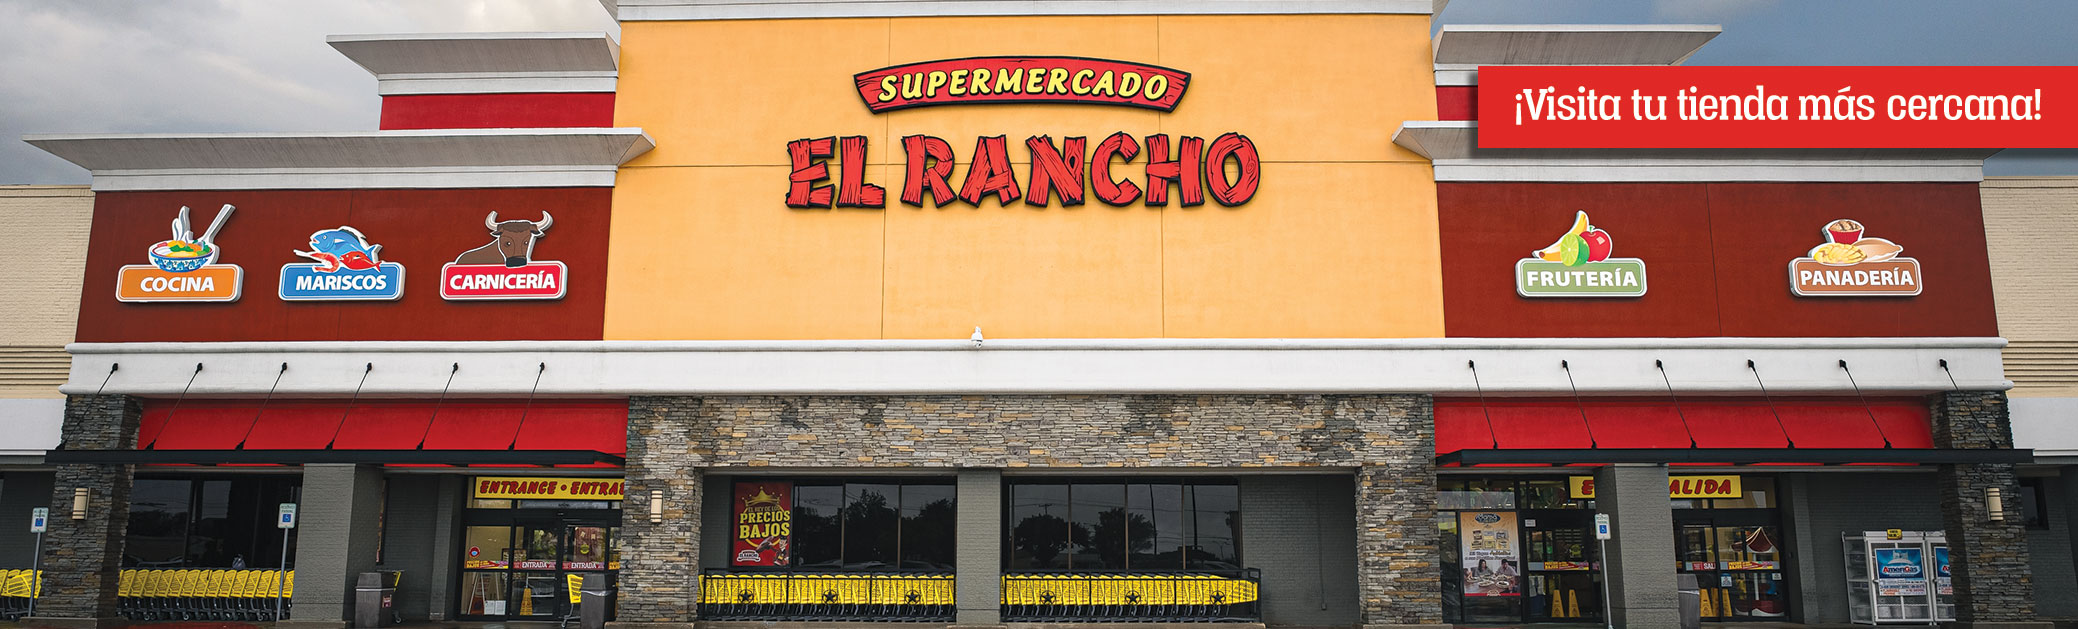 El Rancho  Supermercado